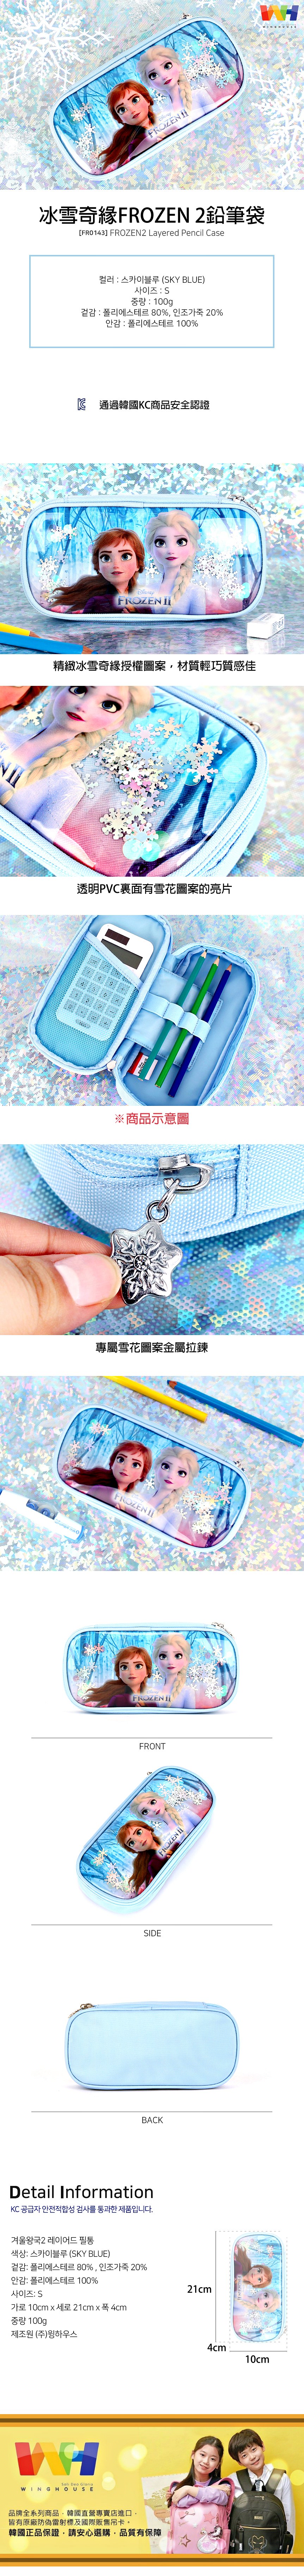 韓國winghouse冰雪奇緣FROZEN 2鉛筆袋【FR0143】藍